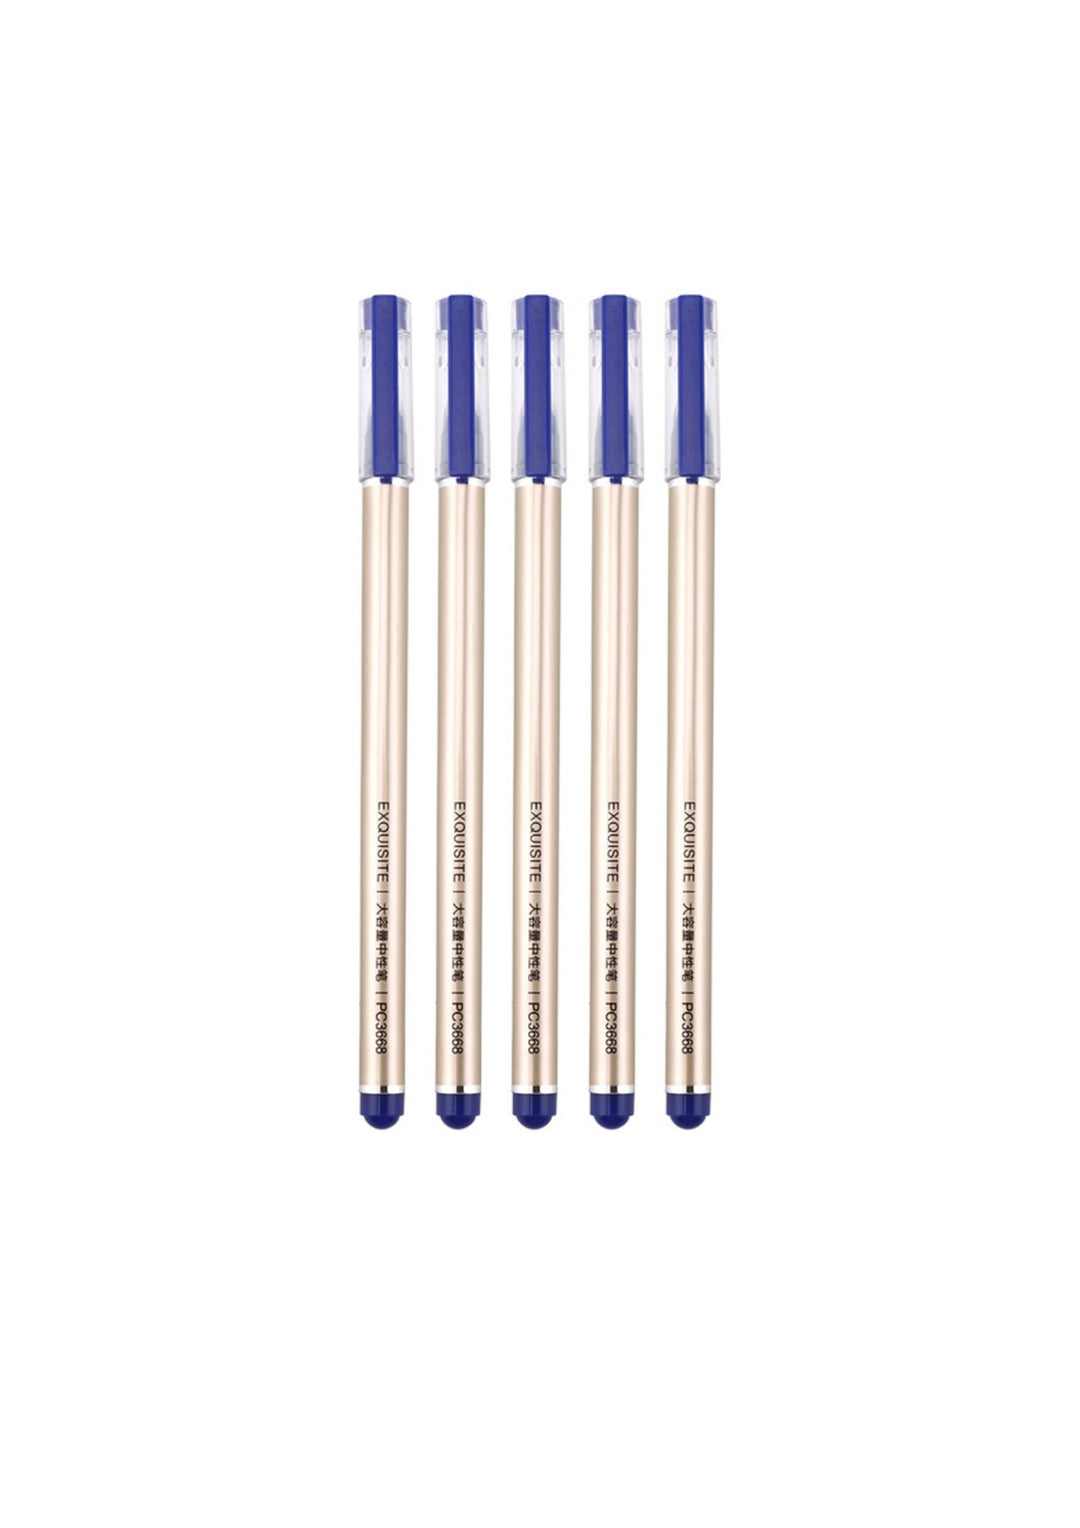 Baoke 0.5mm jumbo Gel ink Blue & Black pen Set of - 5 - SCOOBOO - PC3668 - Gel Pens